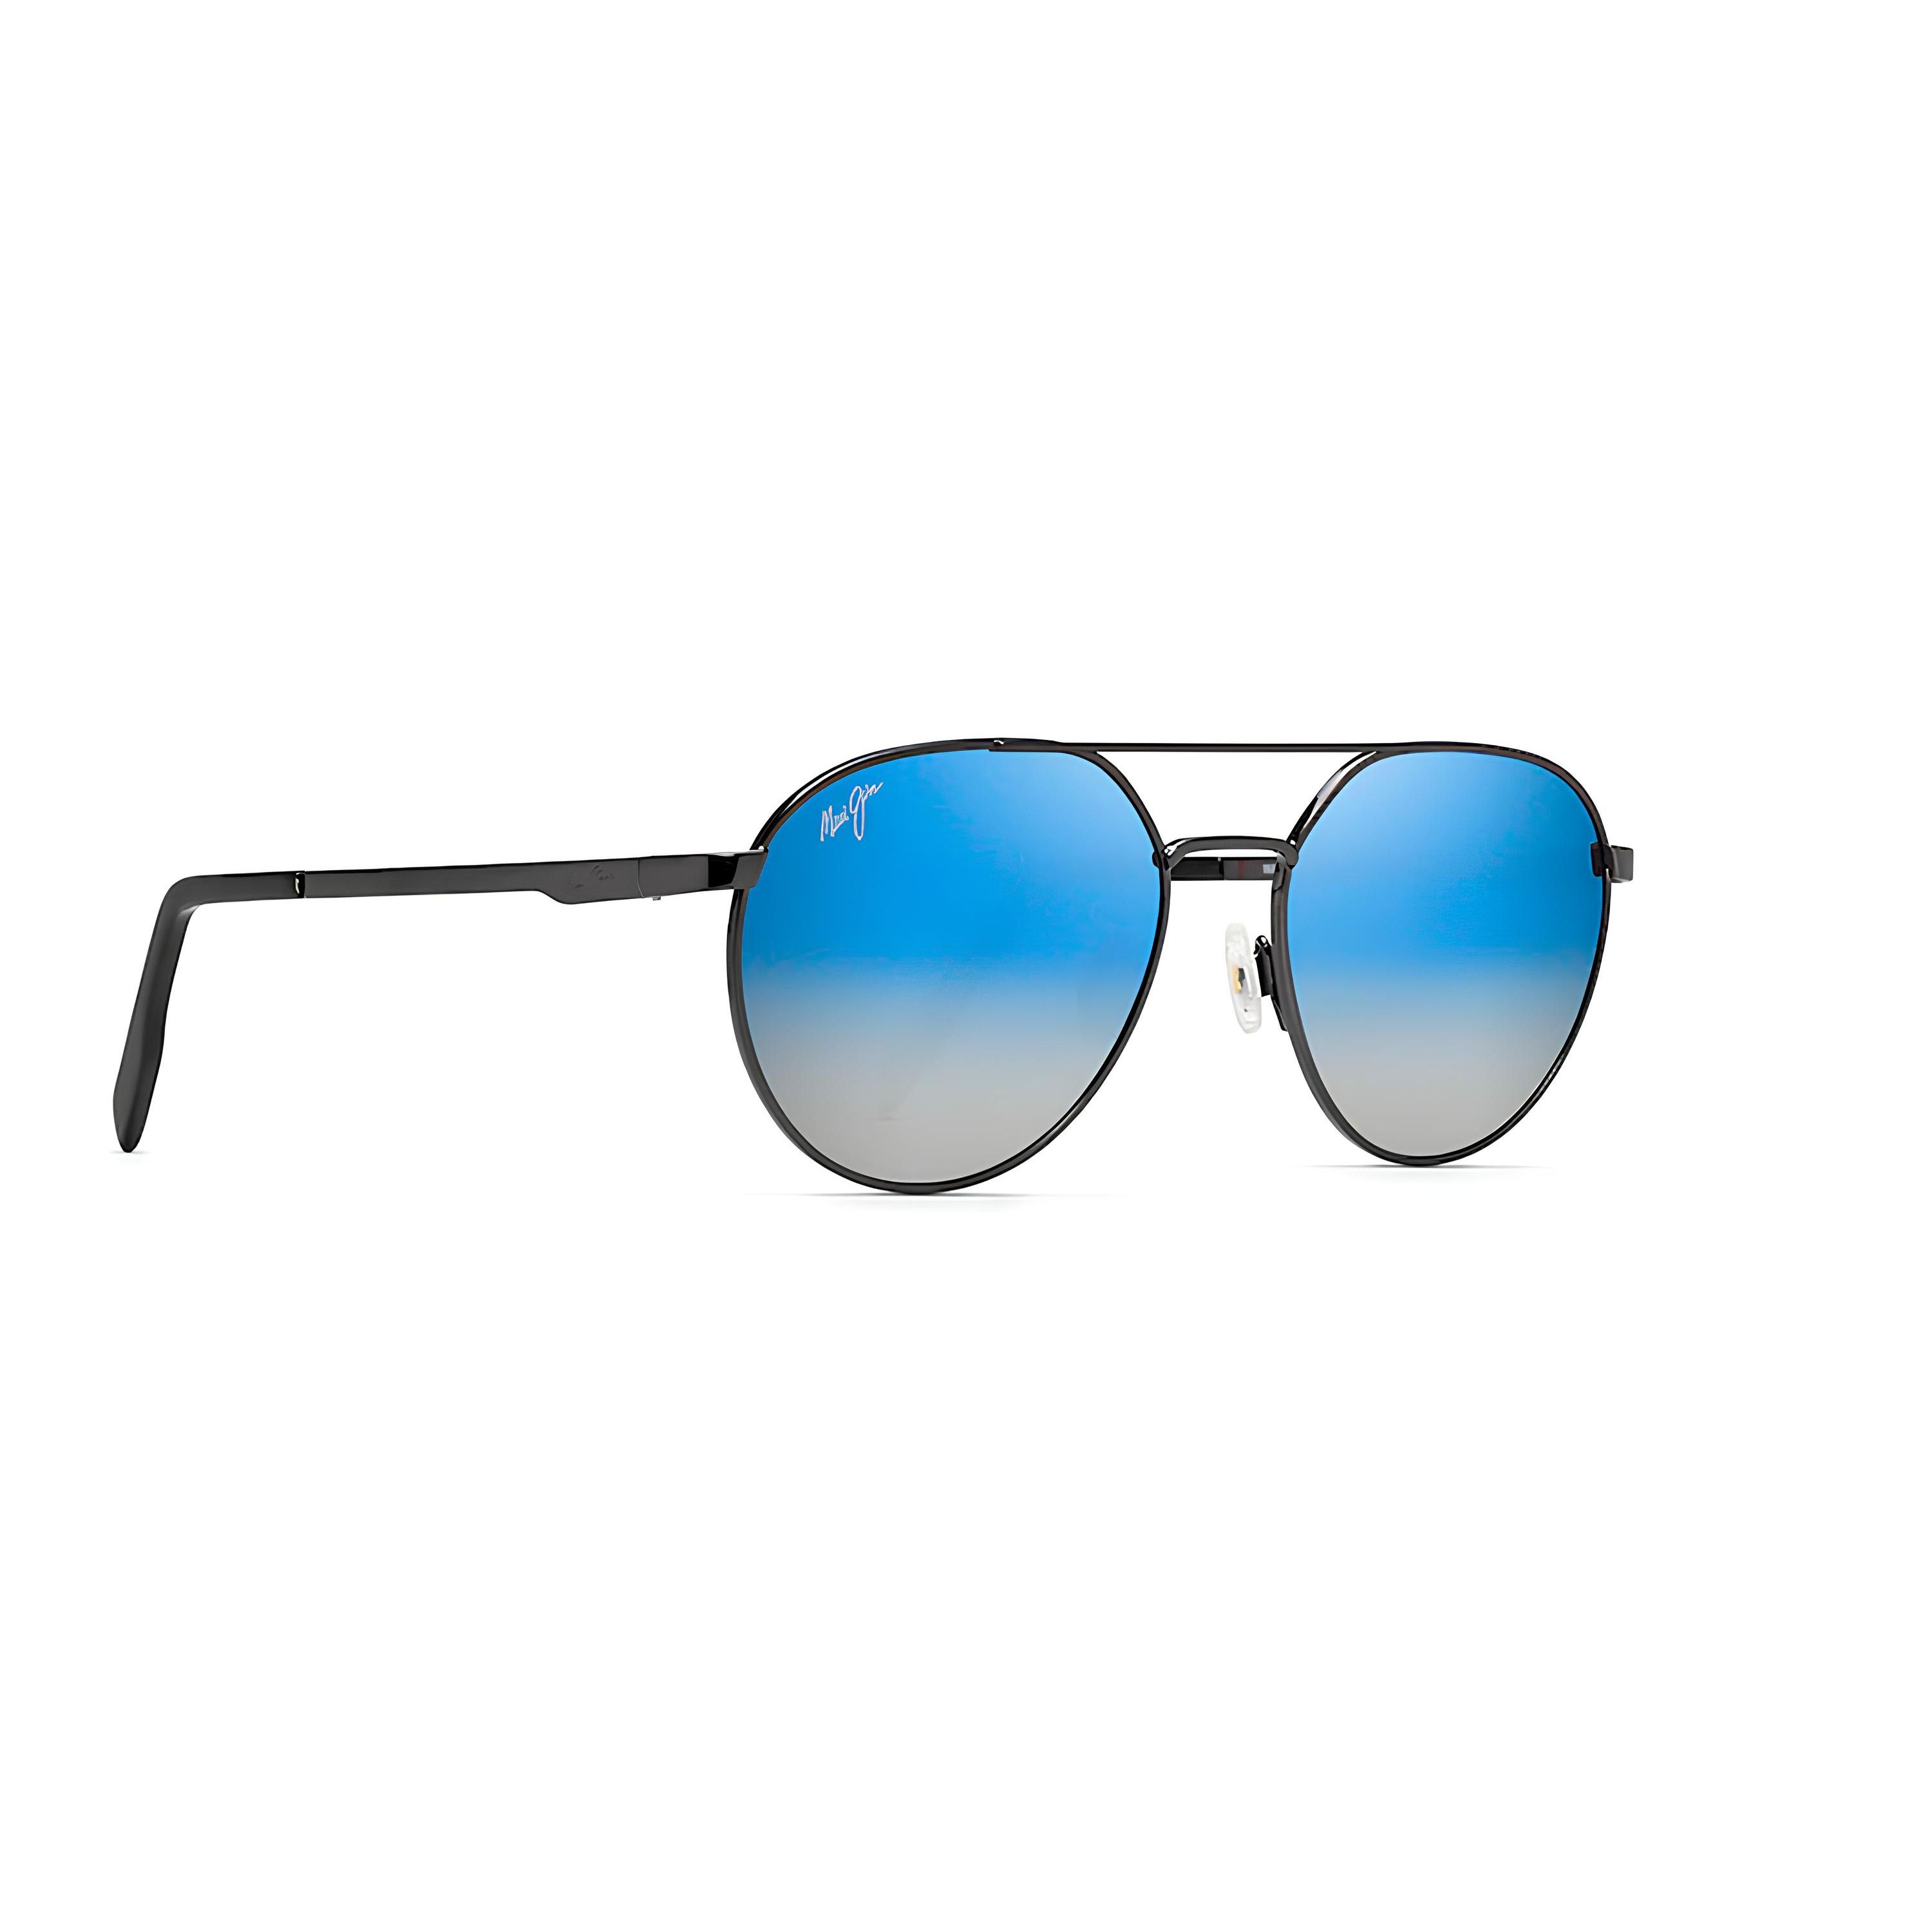 830 Pilot Sunglasses 02C - size 55